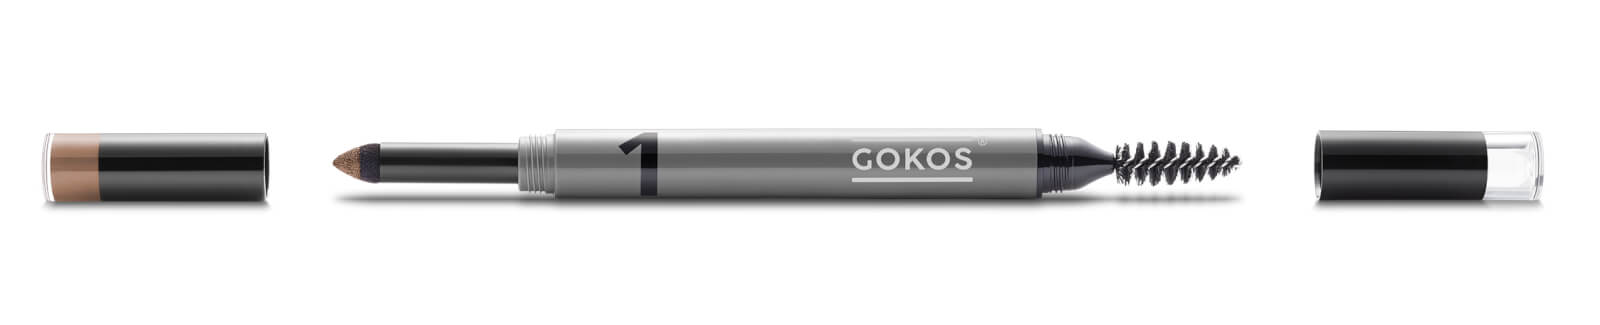 GOKOS - Beauty to go - Indie-Makeup-Brand mit Stiften 35